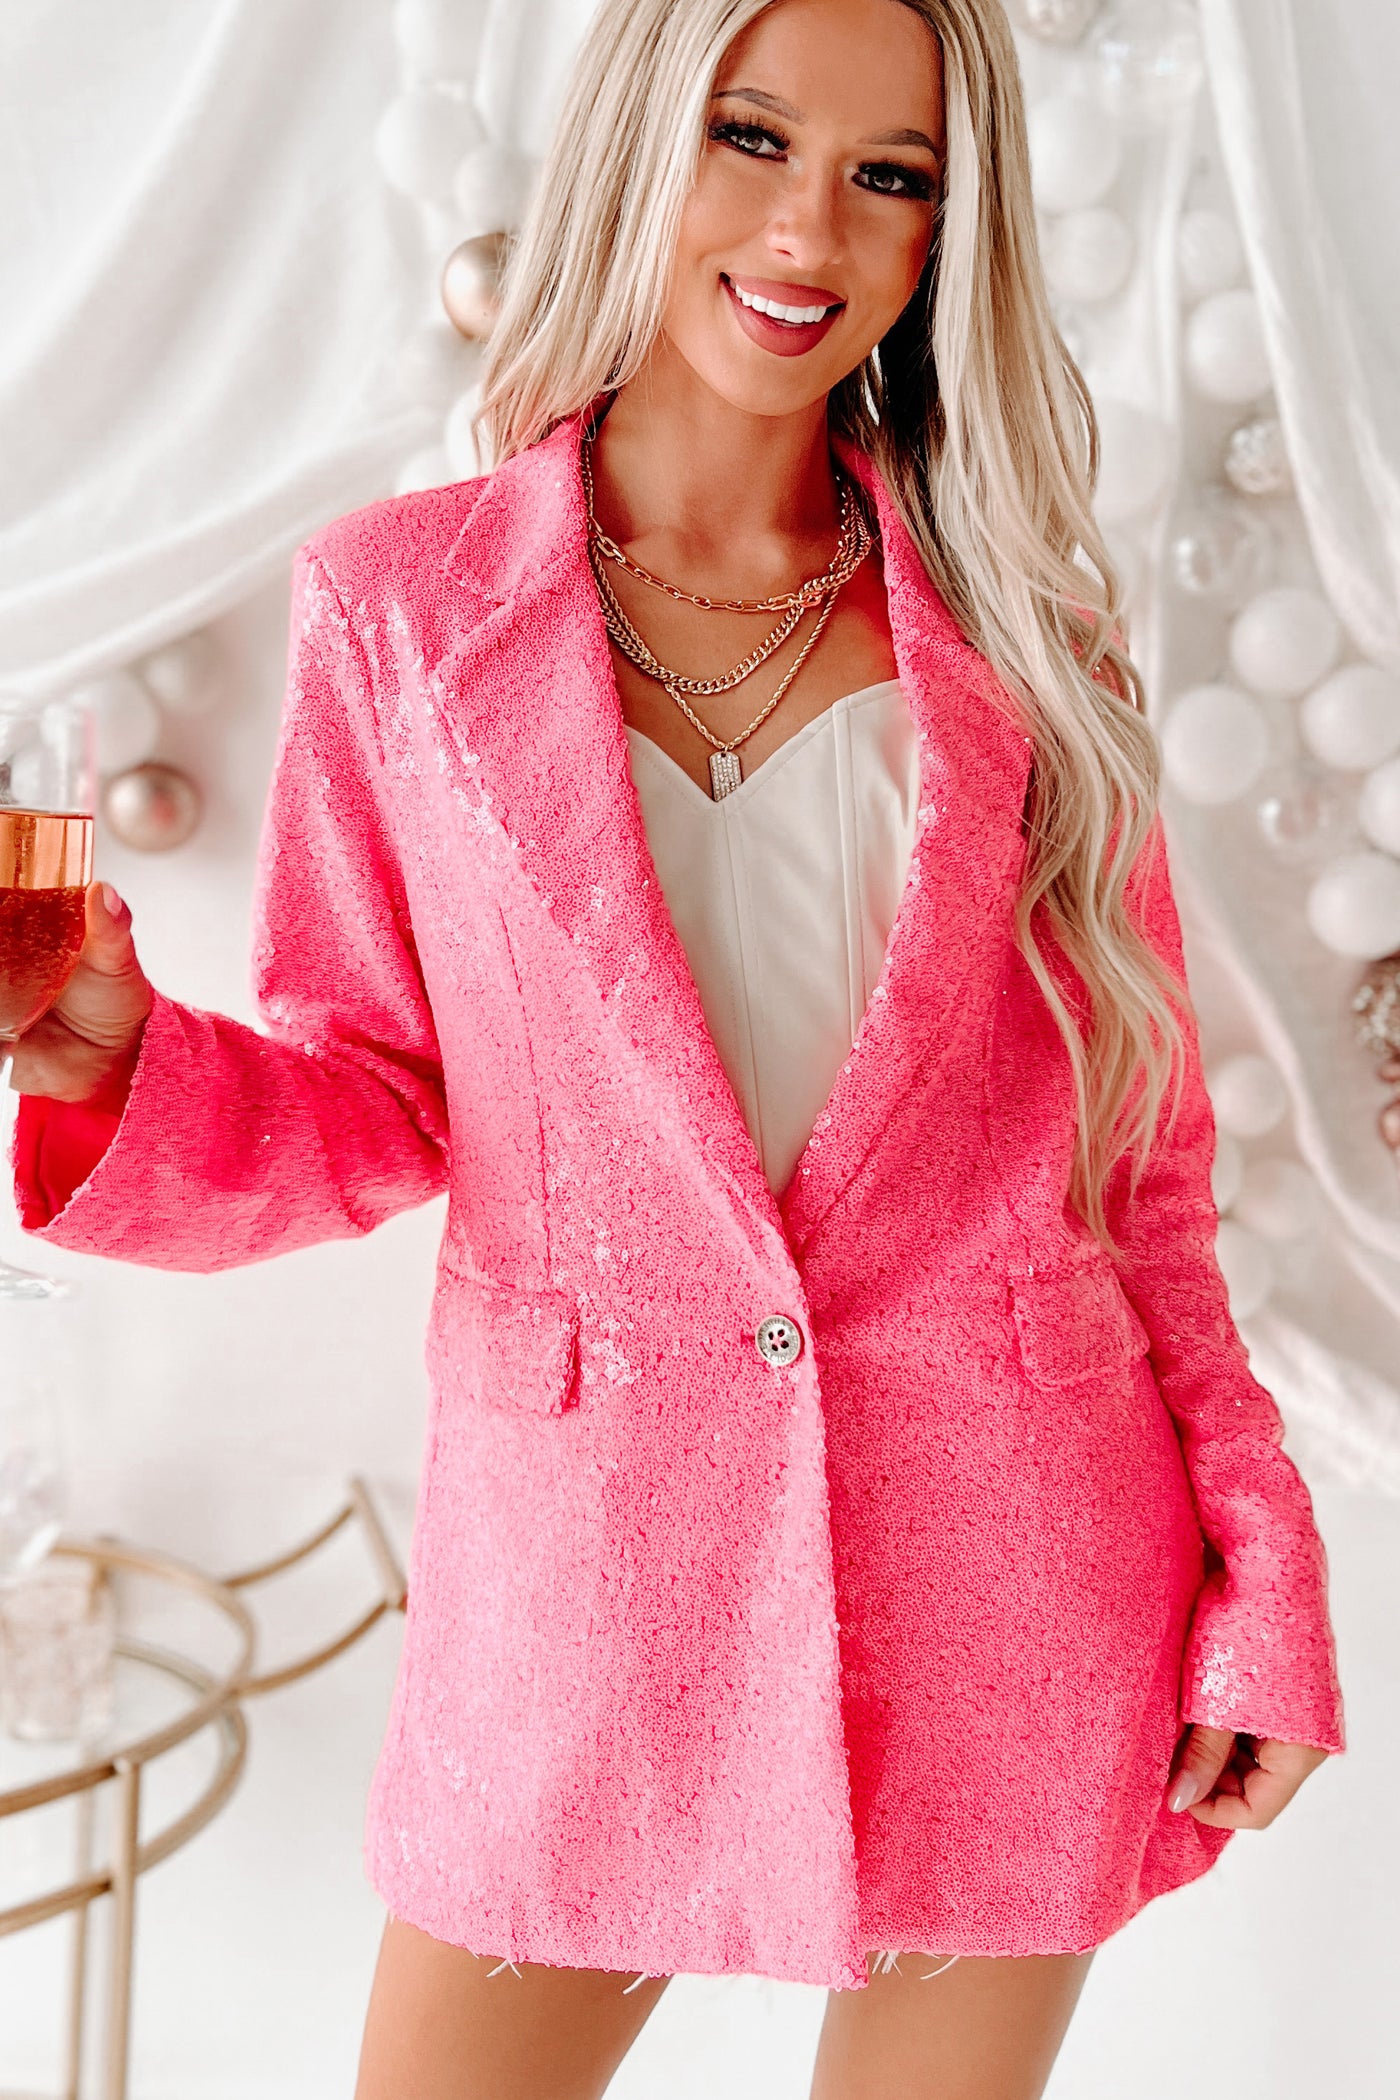 Let's Go Party Sequin Blazer (Pink) - NanaMacs